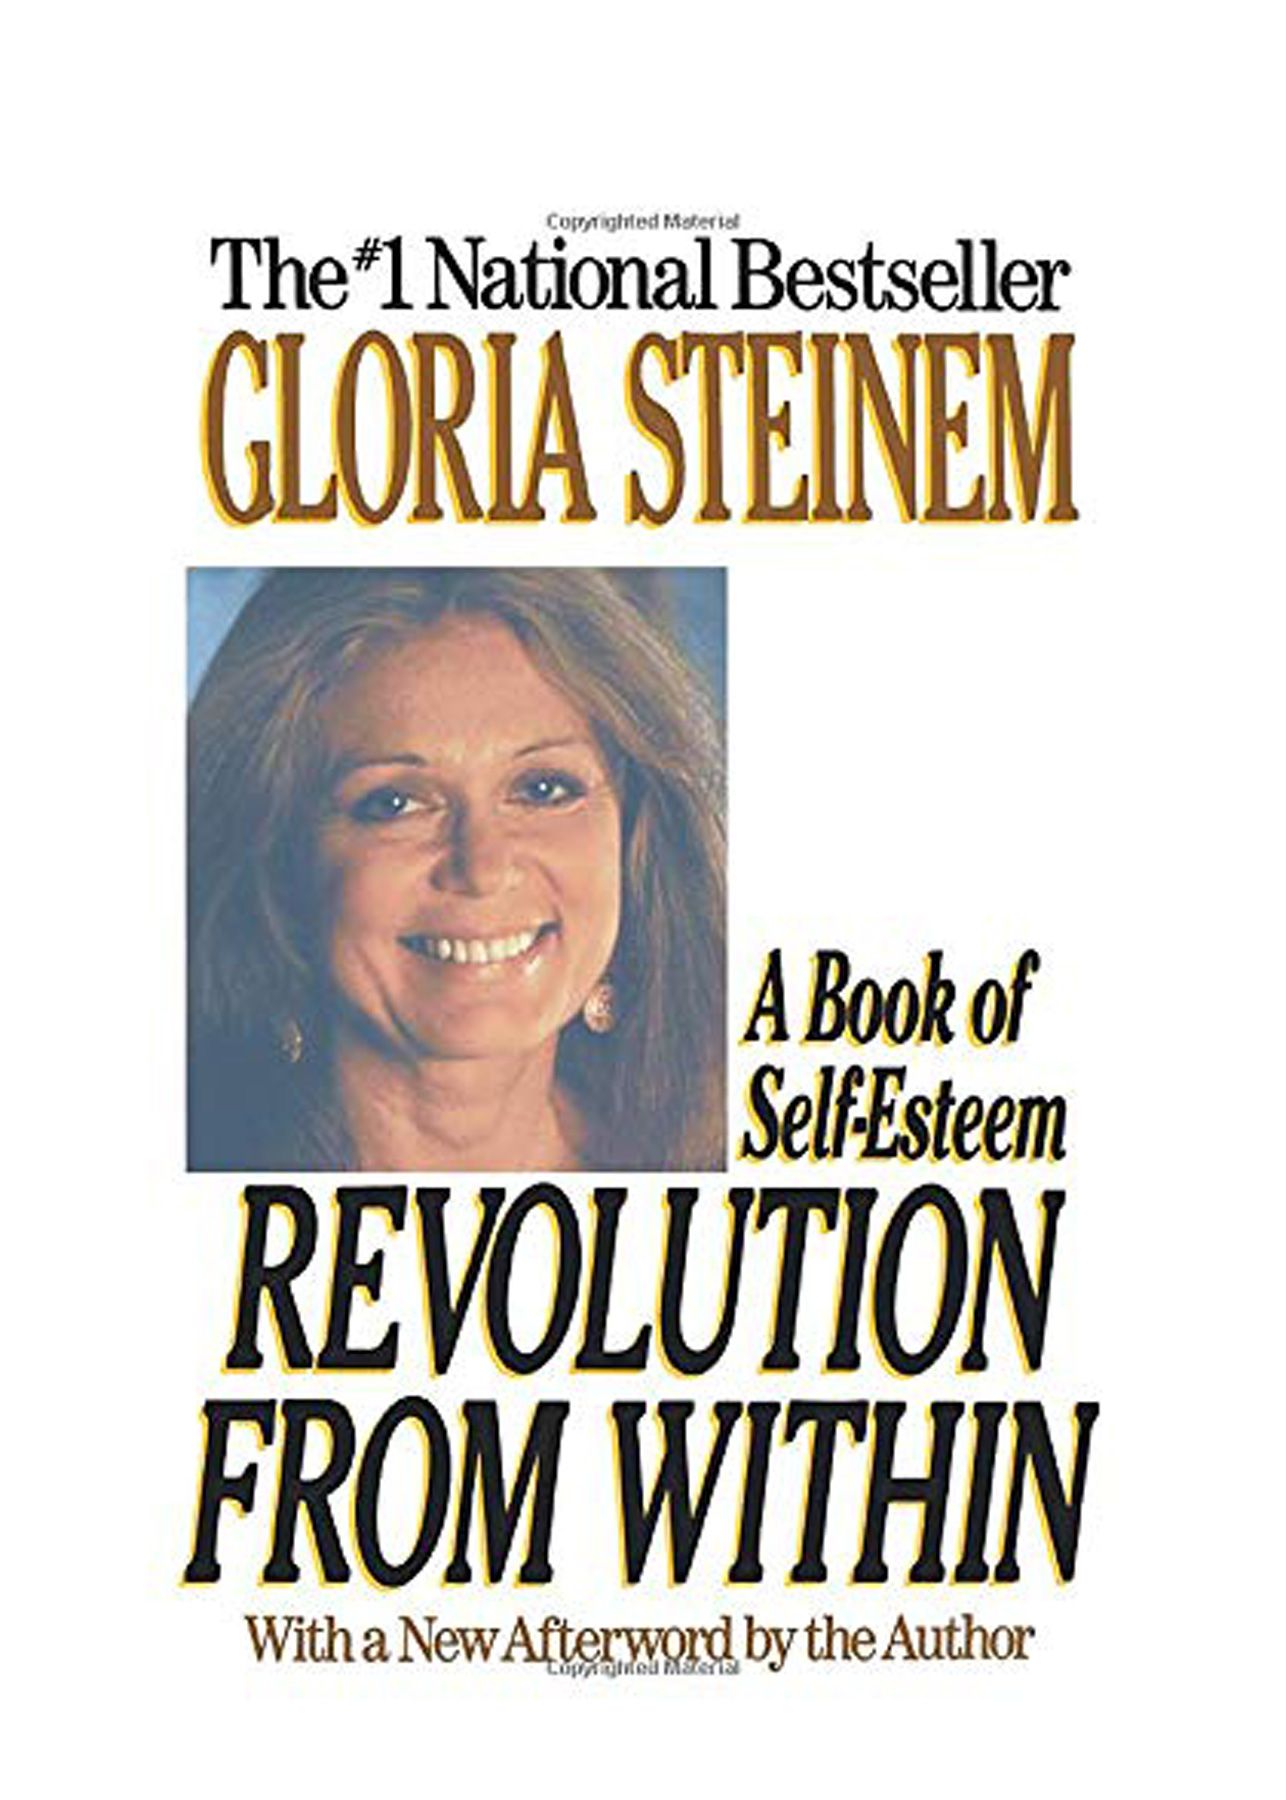 20대에 읽으면 좋은 책: 글로리아 스타이넘의 '내부로부터의 혁명